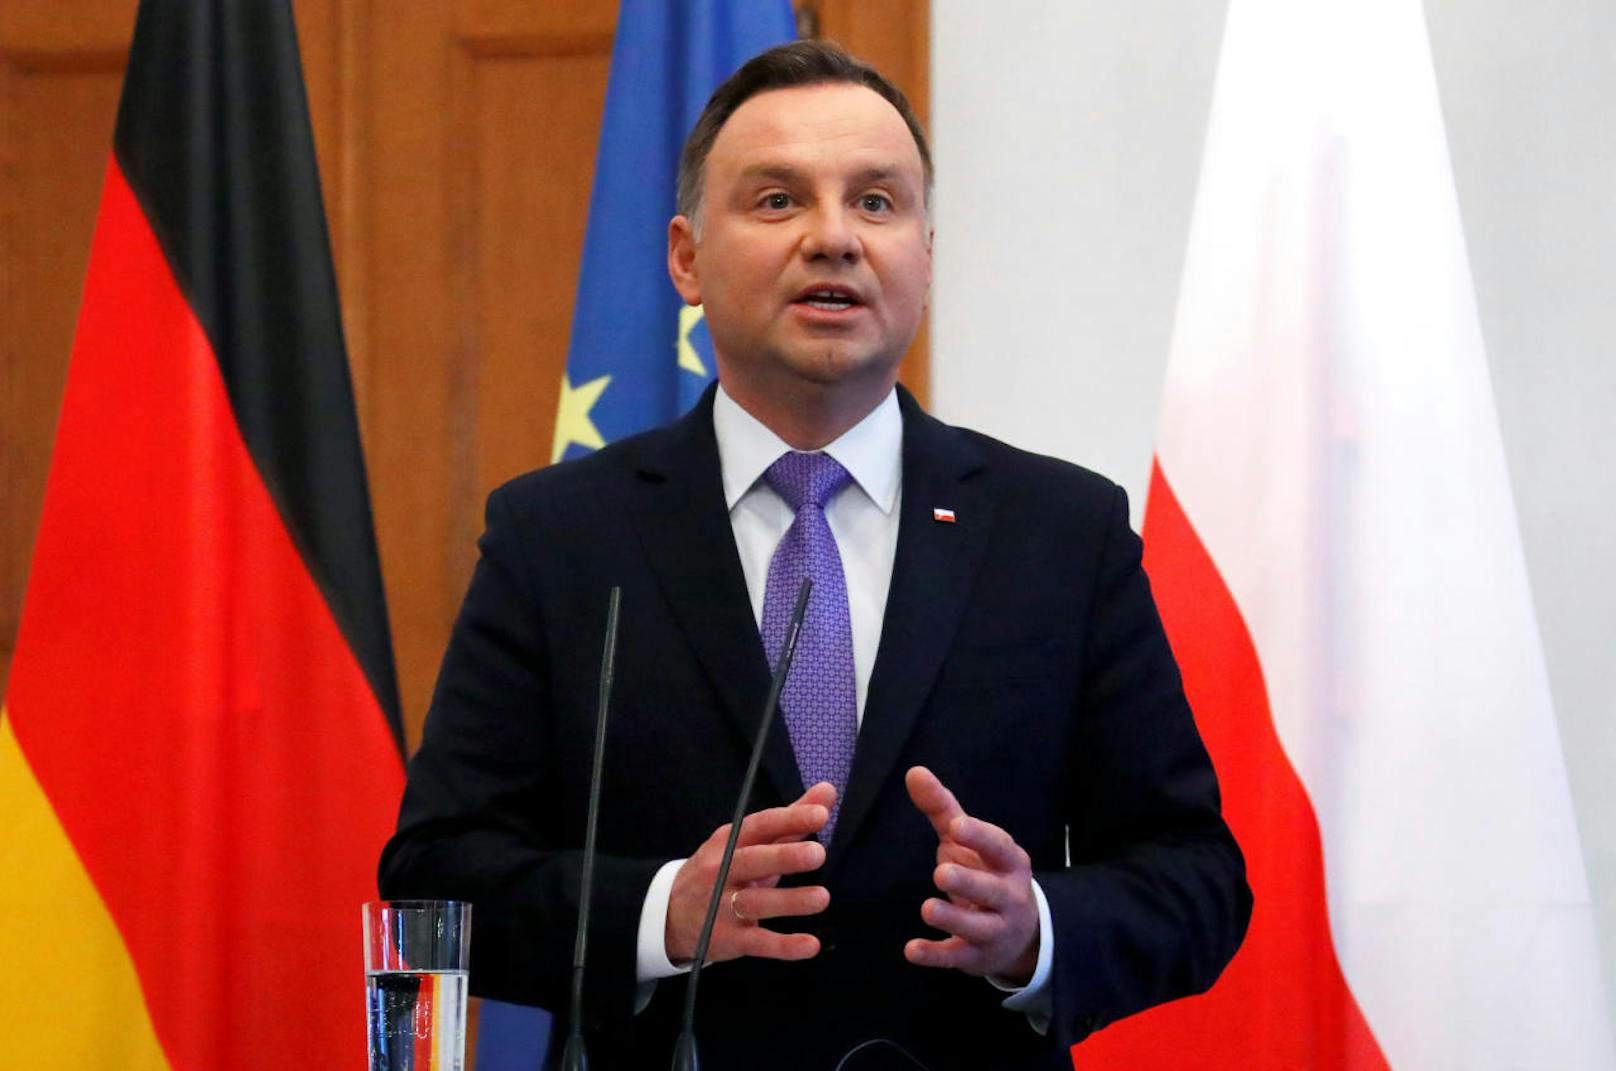 <b>Platz 31: Polen</b>
Der polnische Präsident Andrzej Duda bezieht ein Jahresgehalt von <b>97.500 Euro</b>. Ein durchschnittlicher Pole verdient jährlich ein Viertel, nämlich 24.200 Euro.